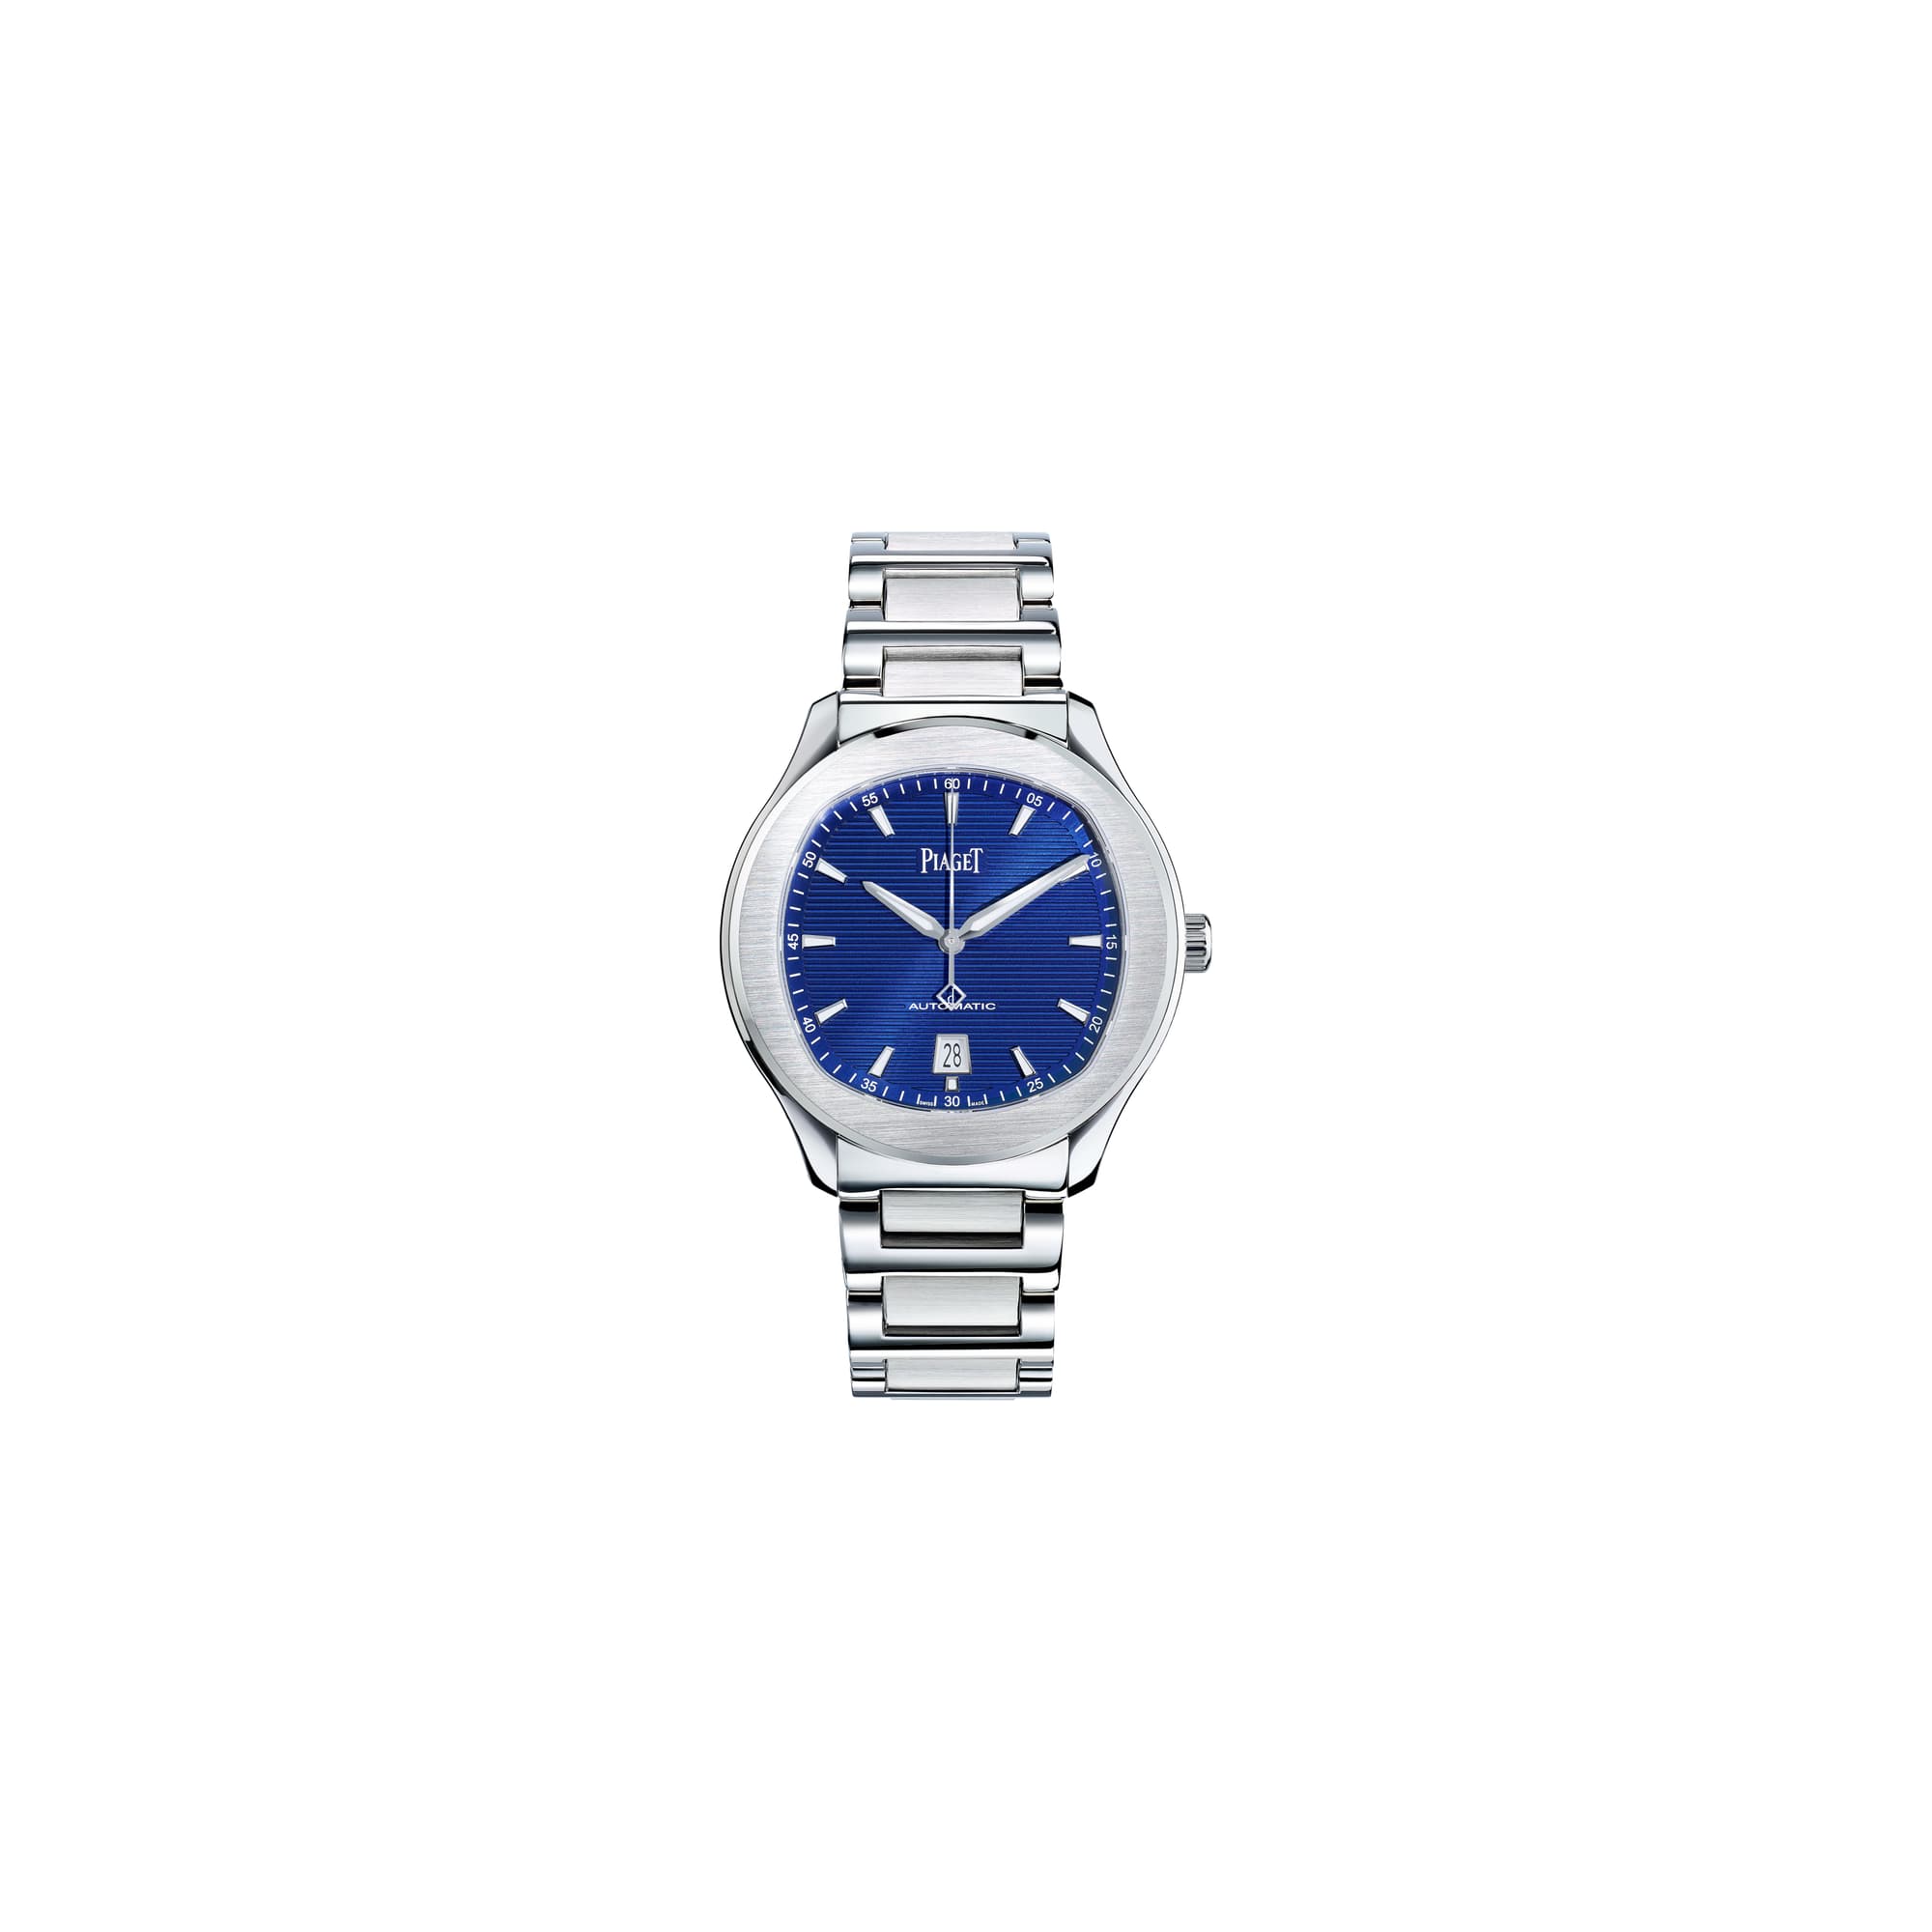 Steel Automatic Watch - Piaget Luxury Men’s Watch G0A41002